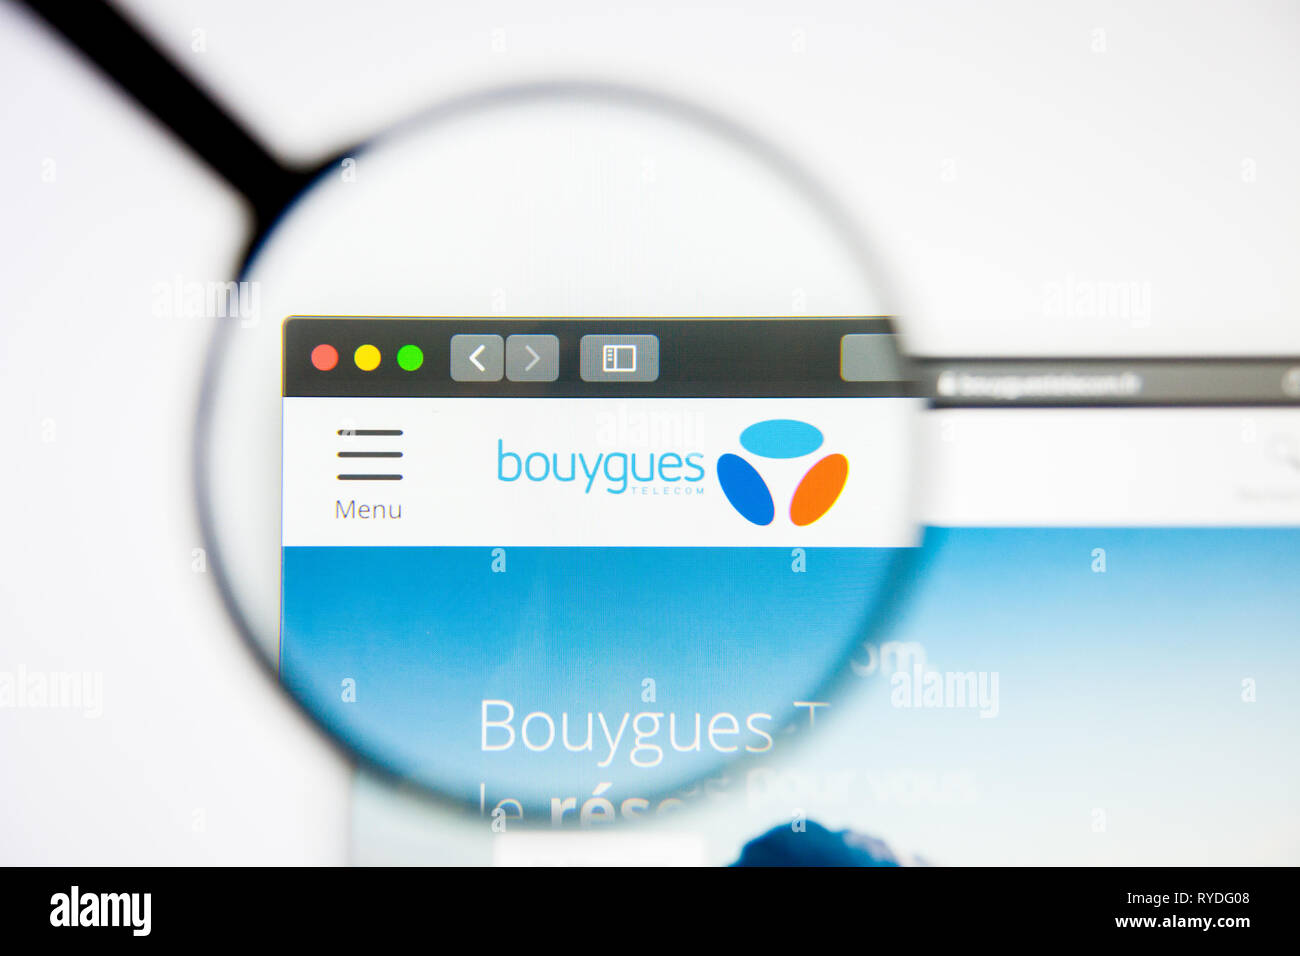 Los Angeles, Kalifornien, USA - 5. März 2019: Bouygues Homepage. Bouygues Logo sichtbar auf dem Display, Illustrative Editorial Stockfoto